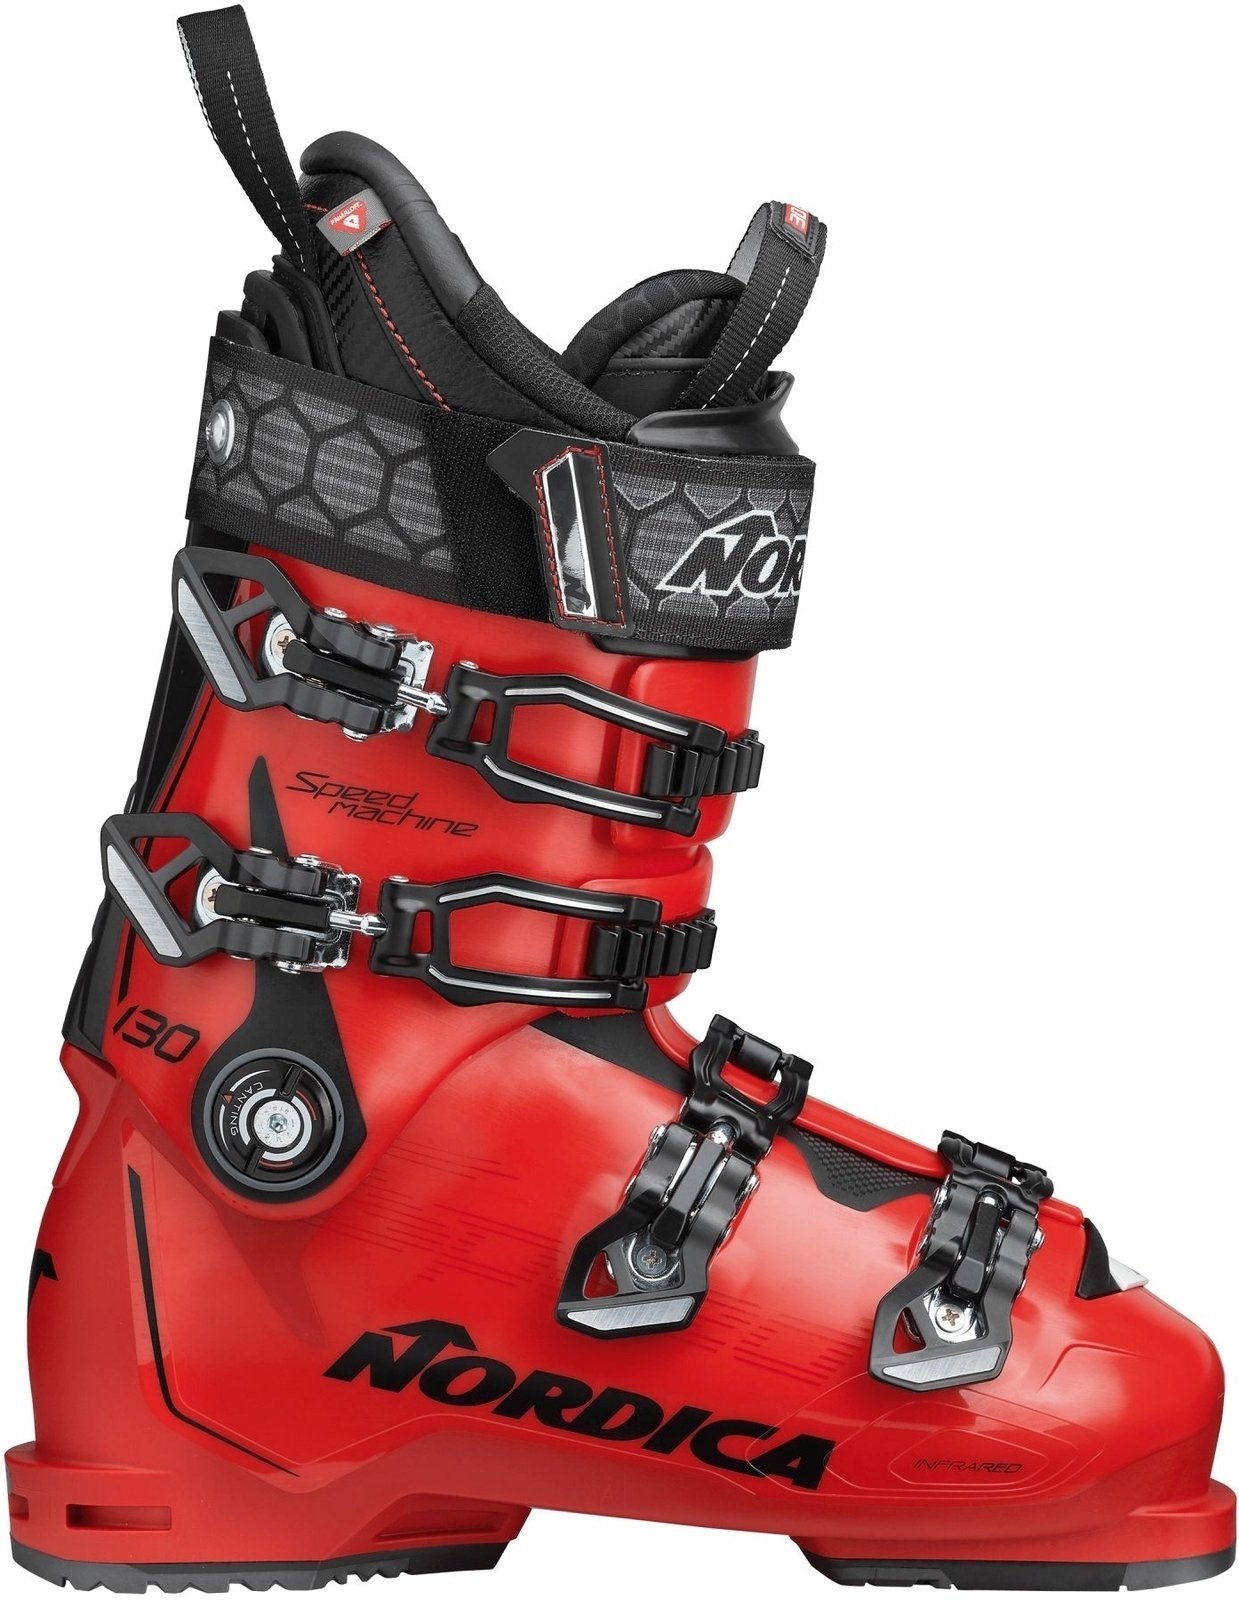 Cipele za alpsko skijanje Nordica Speedmachine Crvena-Crna 290 Cipele za alpsko skijanje